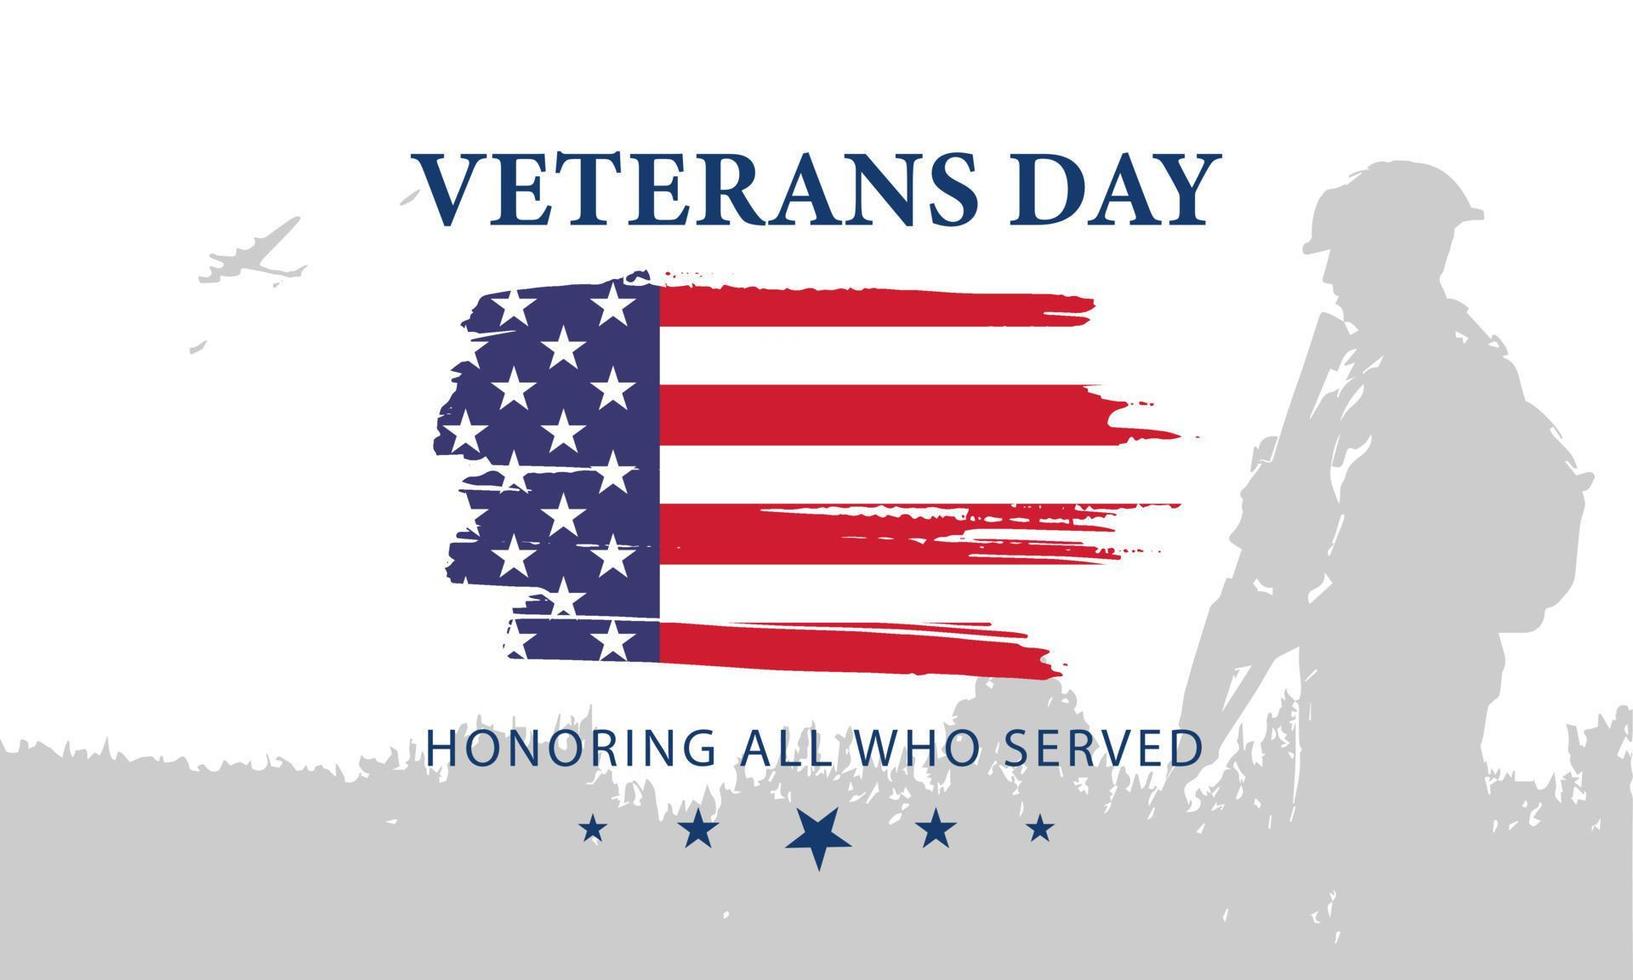 cartel del día del veterano honrando a todos los que sirvieron. ilustración del día de los veteranos con bandera americana y soldados vector